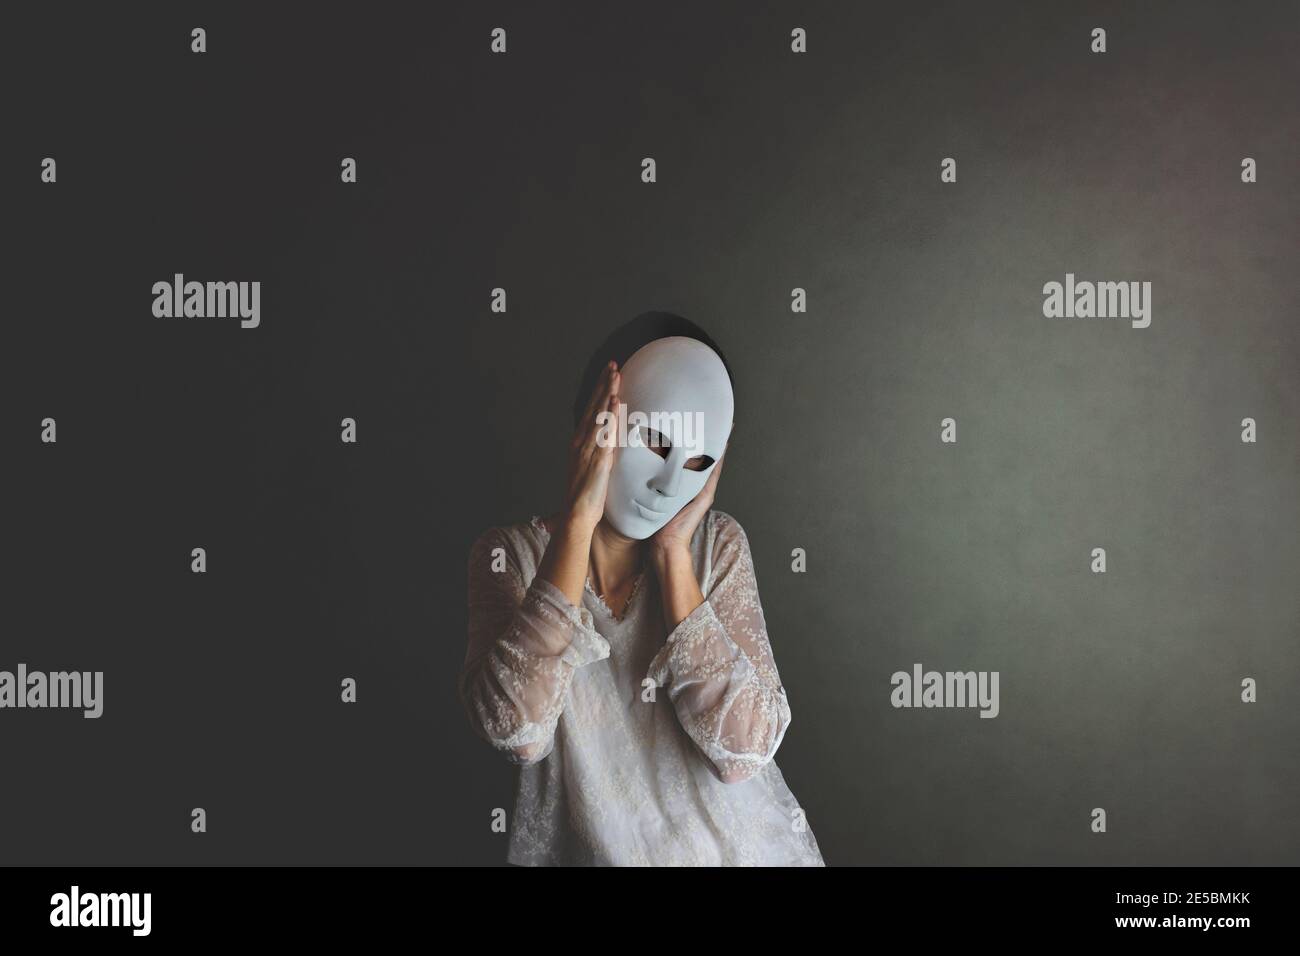 la femme couvre son visage avec un masque pour se protéger, concept de solitude et d'introspection Banque D'Images